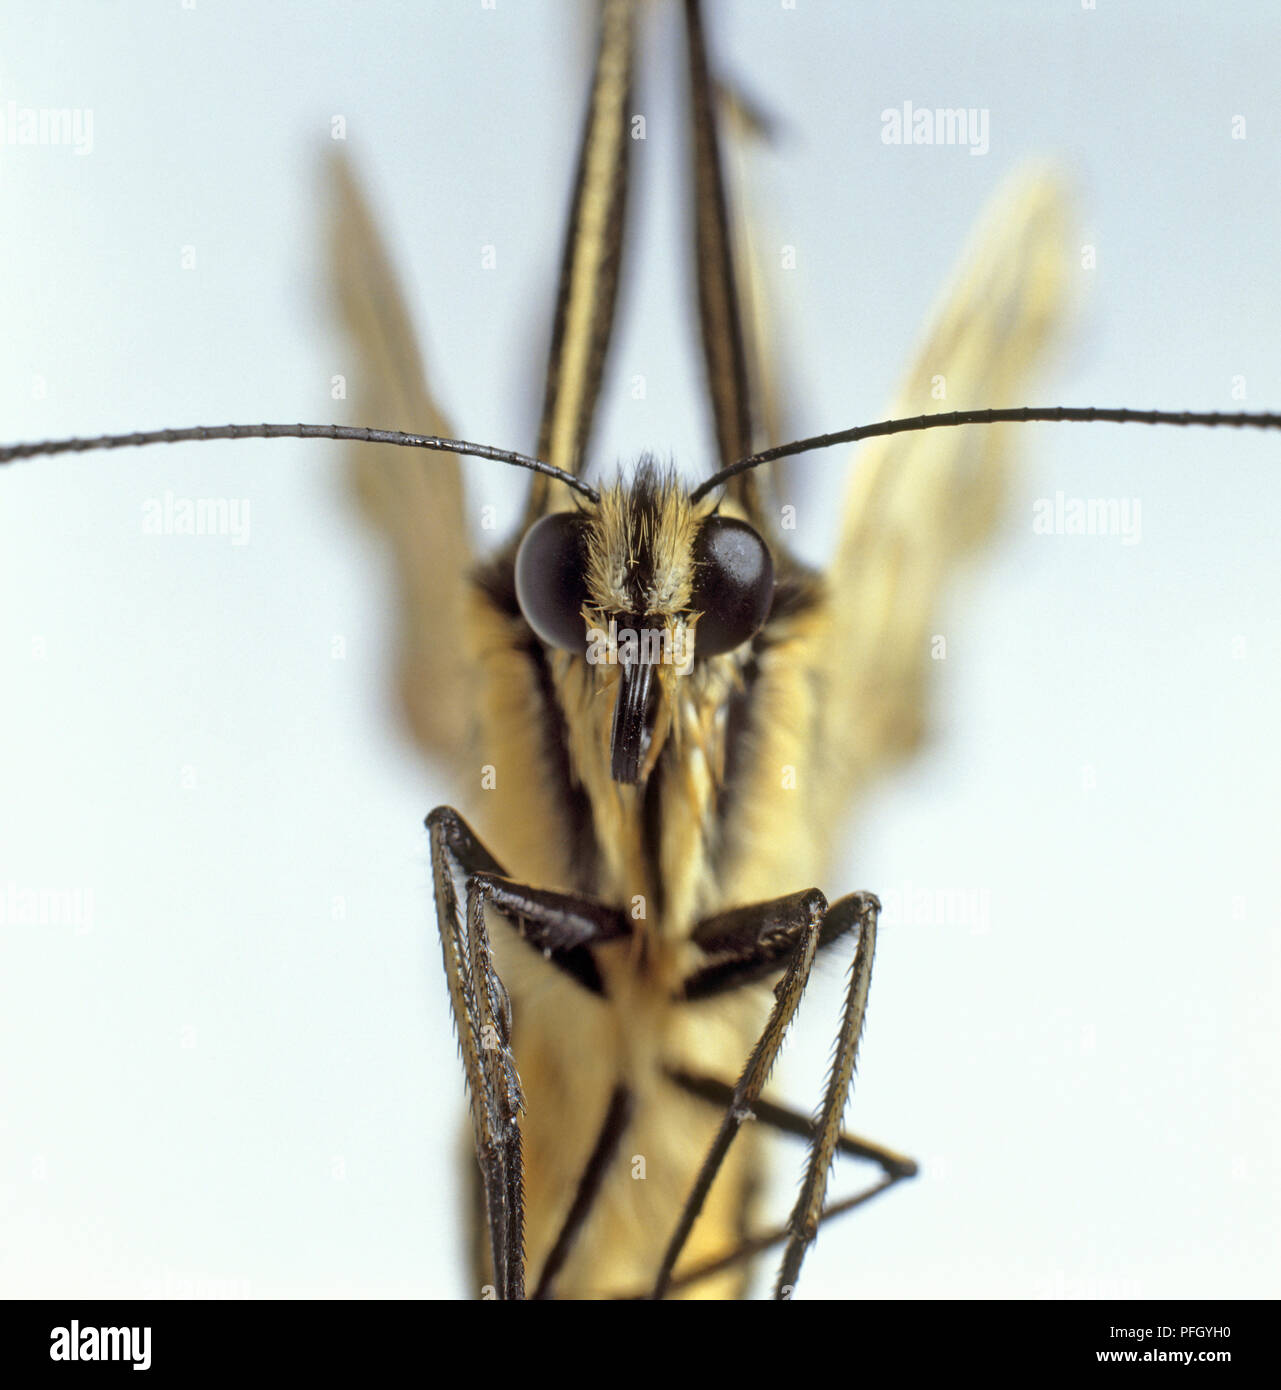 Ingrandimento della farfalla che mostra gli occhi, proboscide, antenne, e gambe Foto Stock